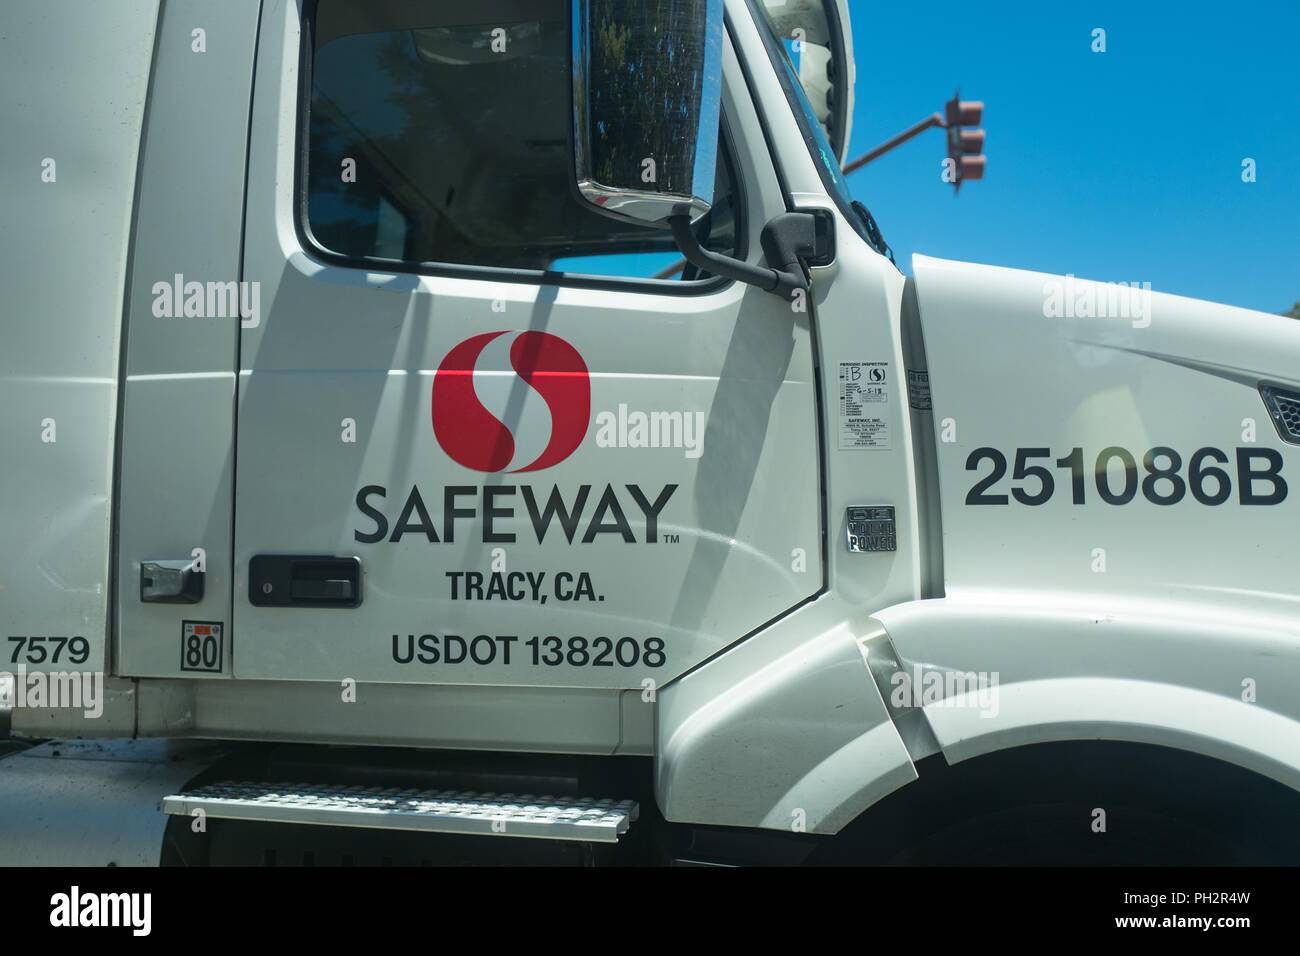 Nahaufnahme der Seite einer Semi Truck mit Logo für Safeway Supermarkt Kette in Berkeley, Kalifornien, 10. Juli 2018. () Stockfoto